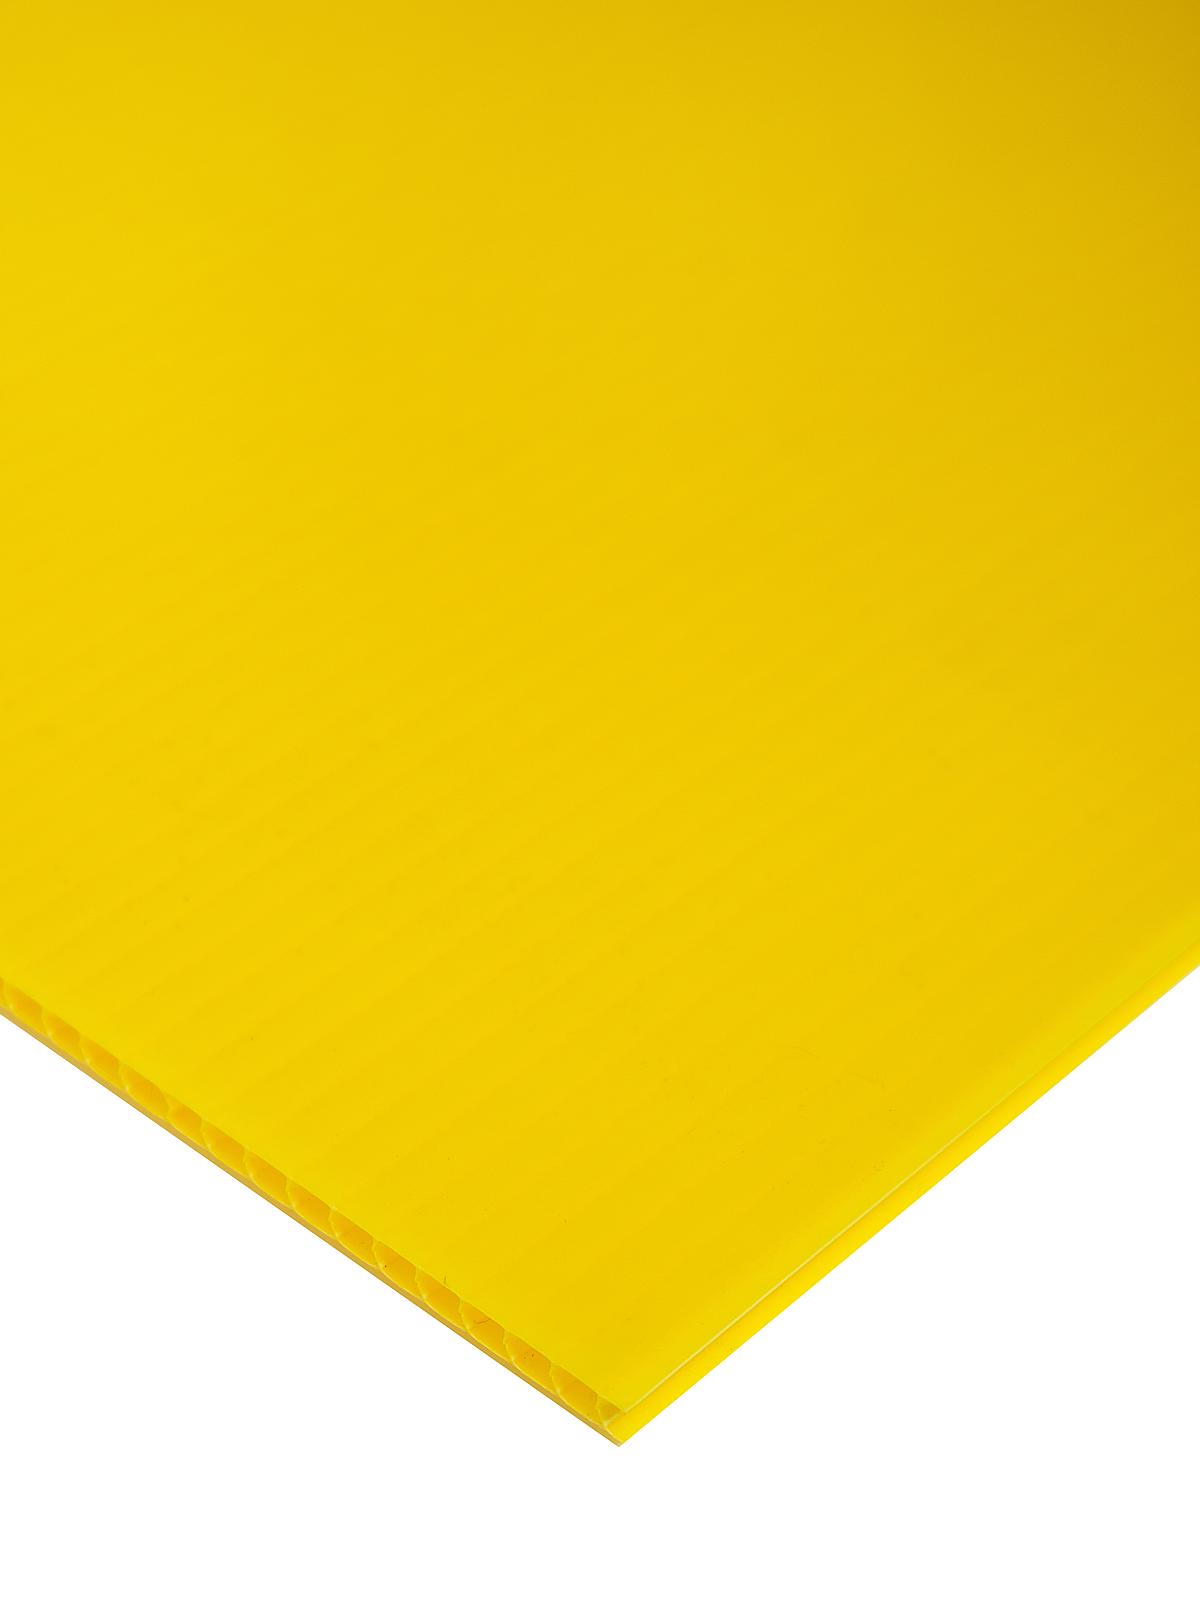 Plasticor Corrugated Boards Yellow 20 In. X 30 In.